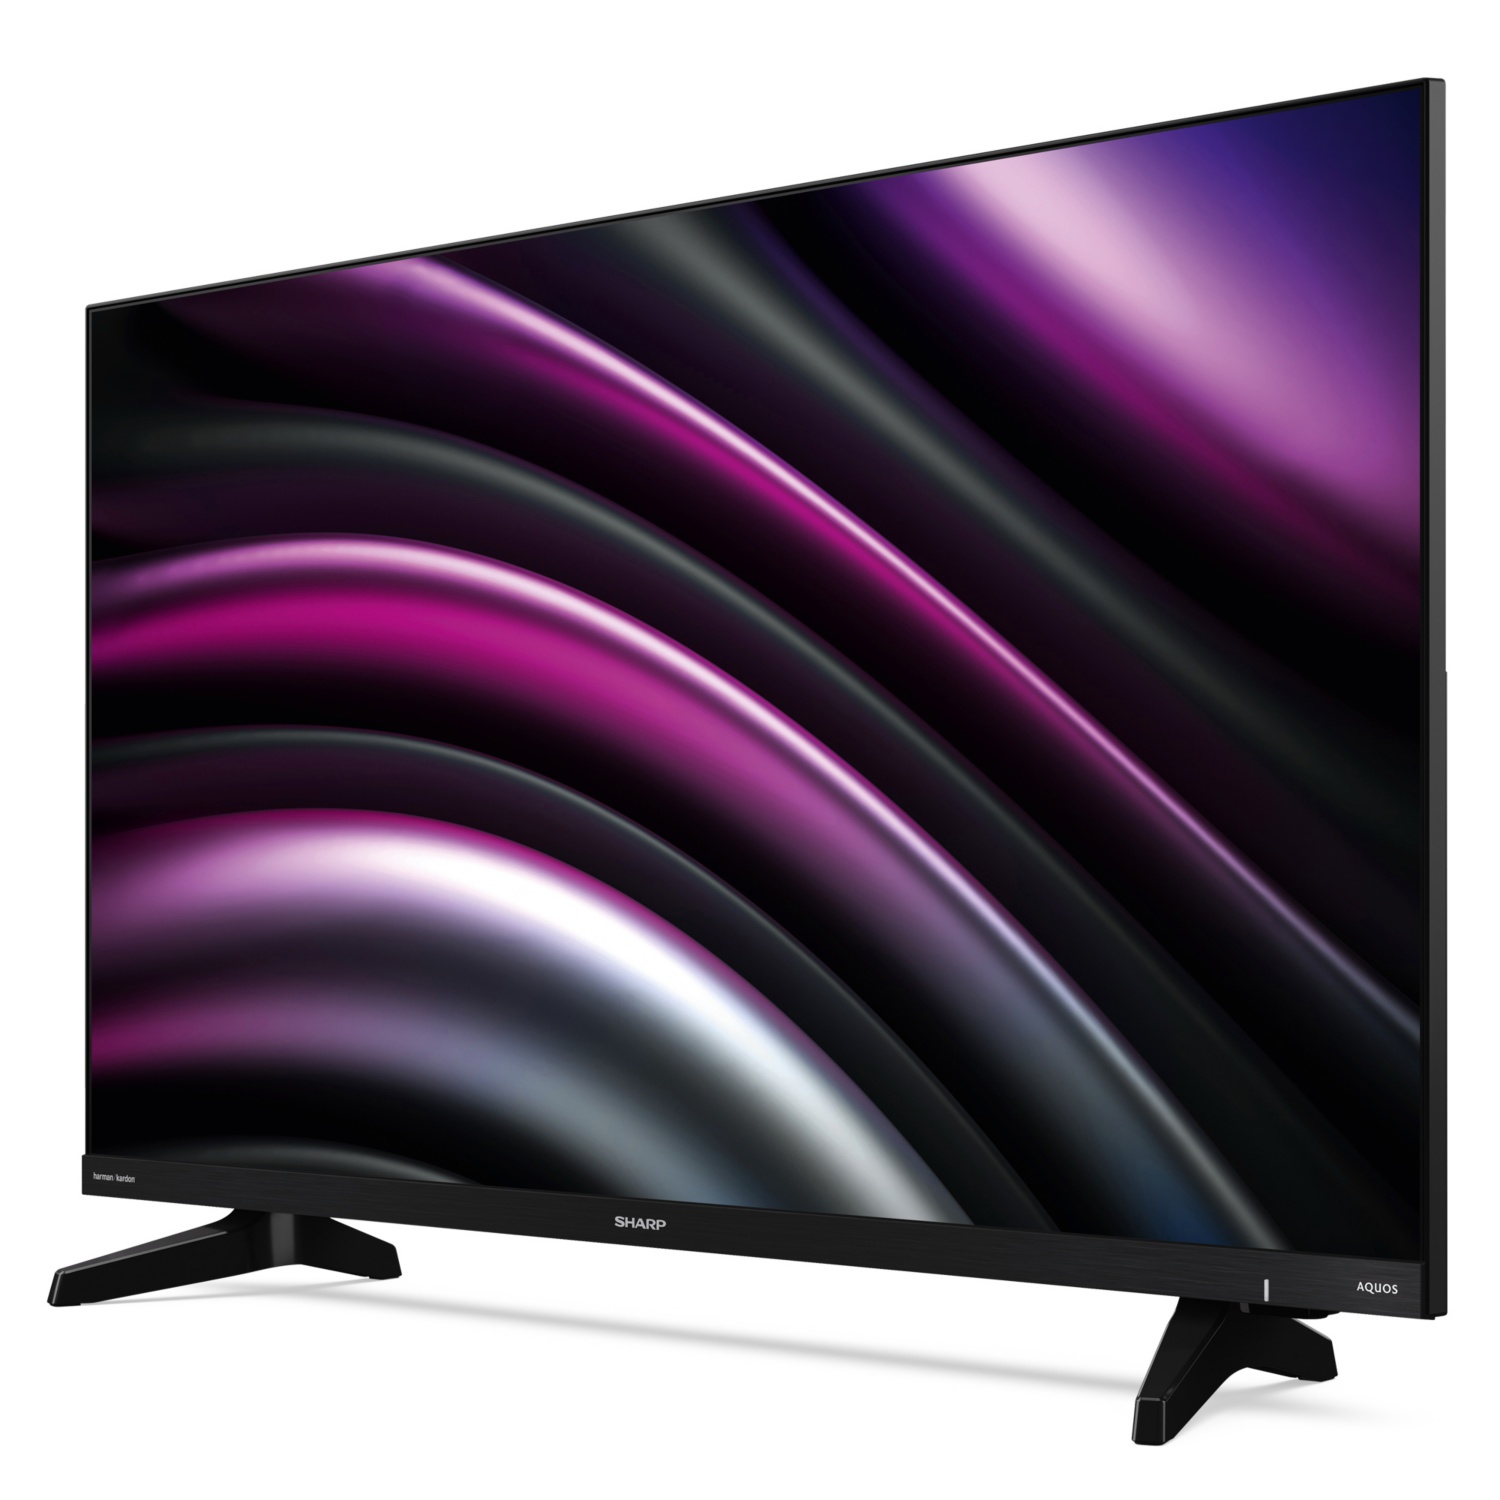 SHARP TV HD LED 81 cm (32”) DB2E